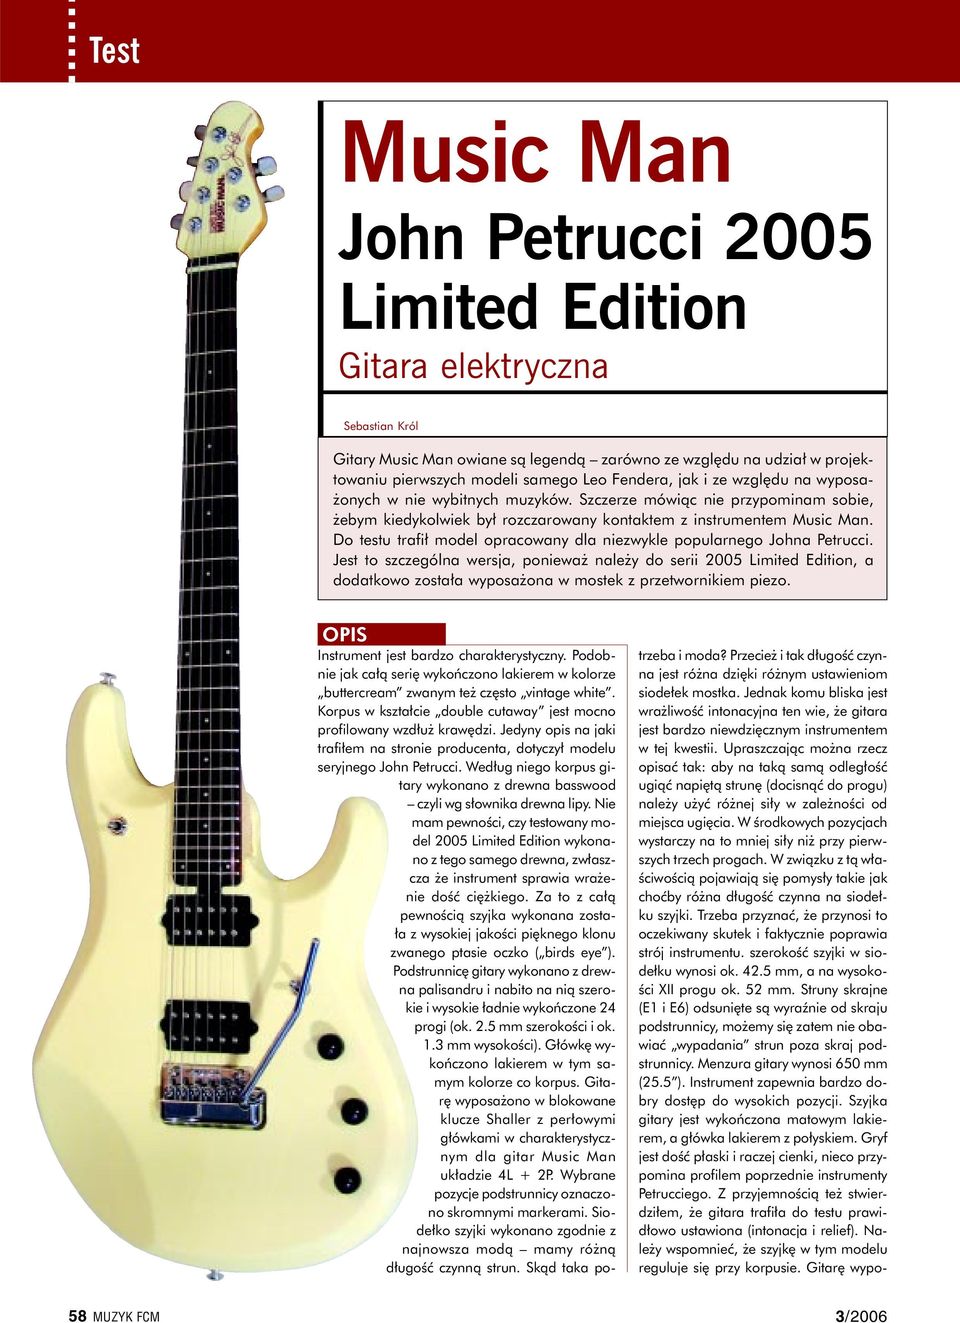 Do testu trafił model opracowany dla niezwykle popularnego Johna Petrucci.